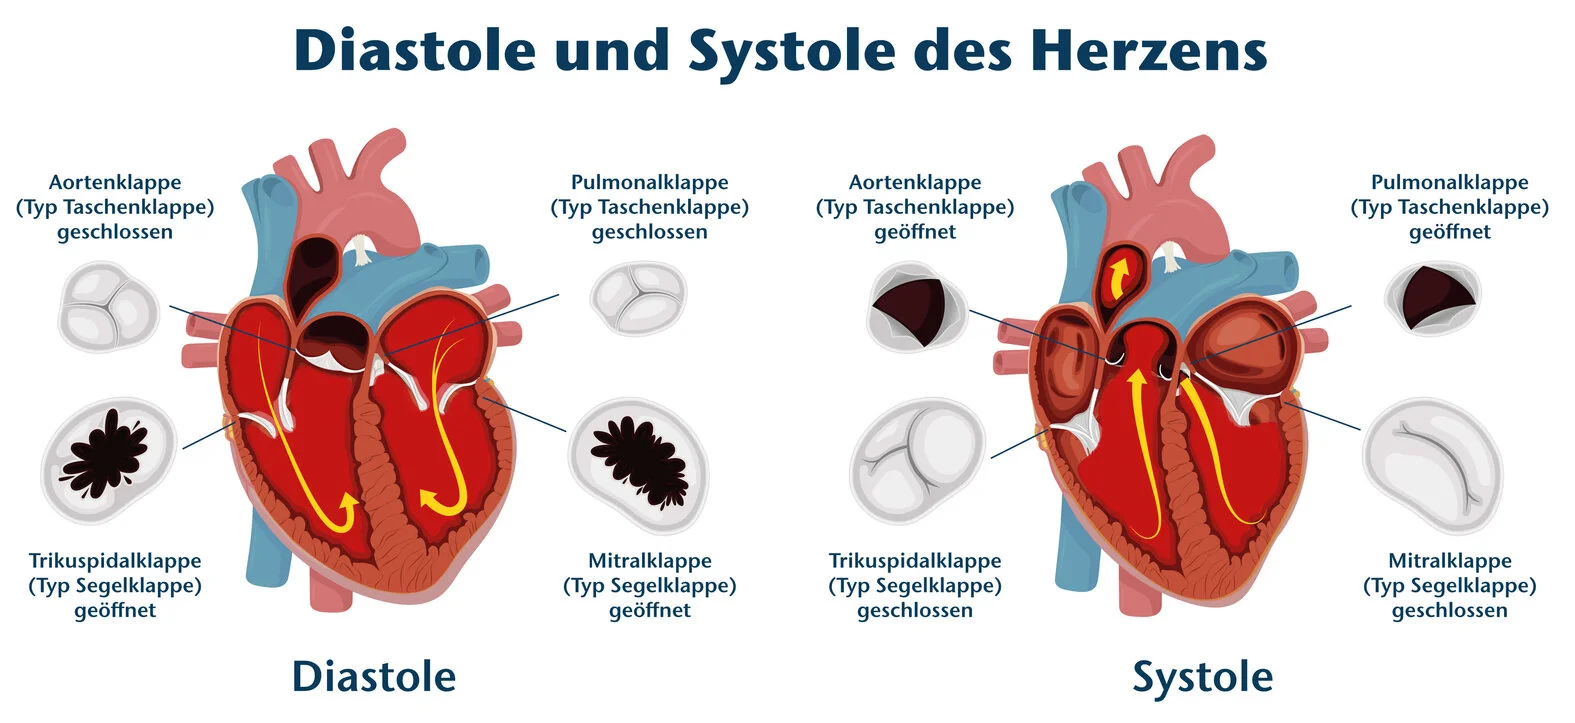 Systole und Diastole des Herzens, Herzklappen, schematische Darstellung